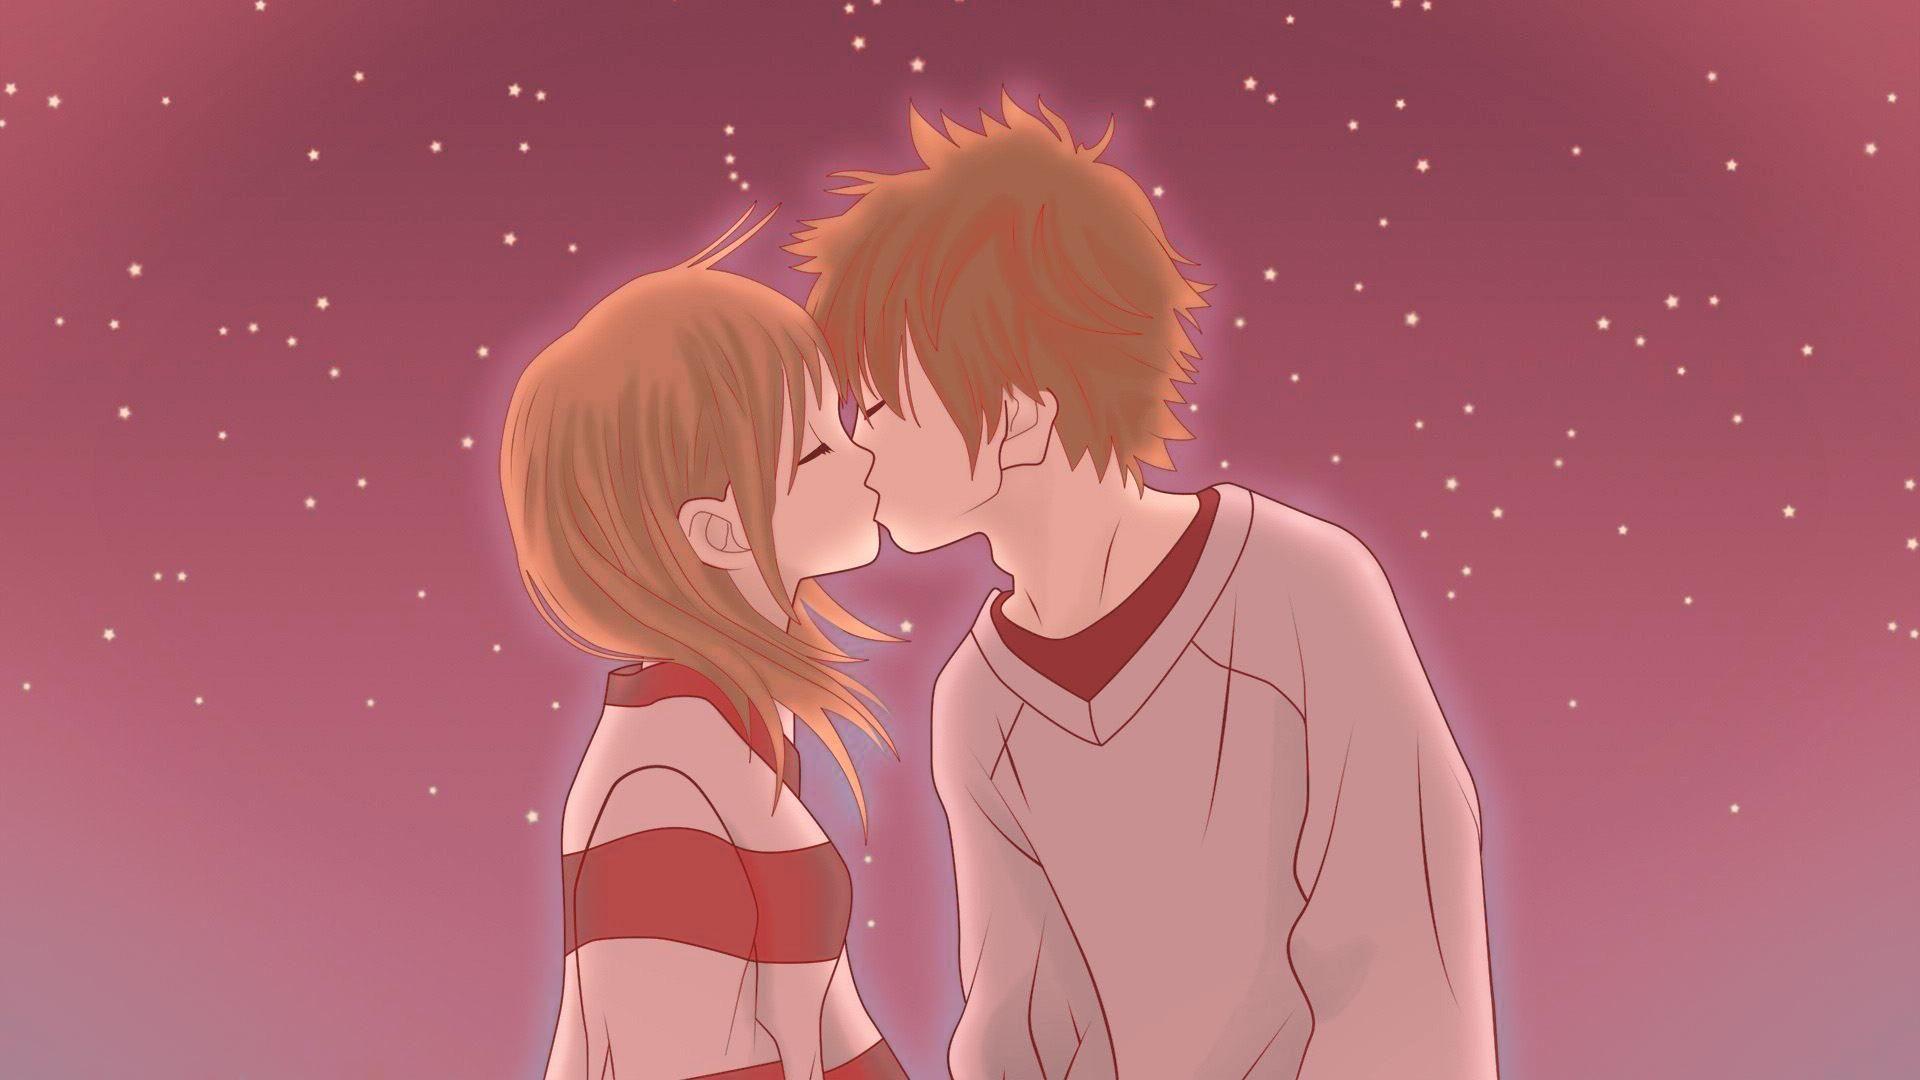 Anime Kiss Images - AniYuki.com